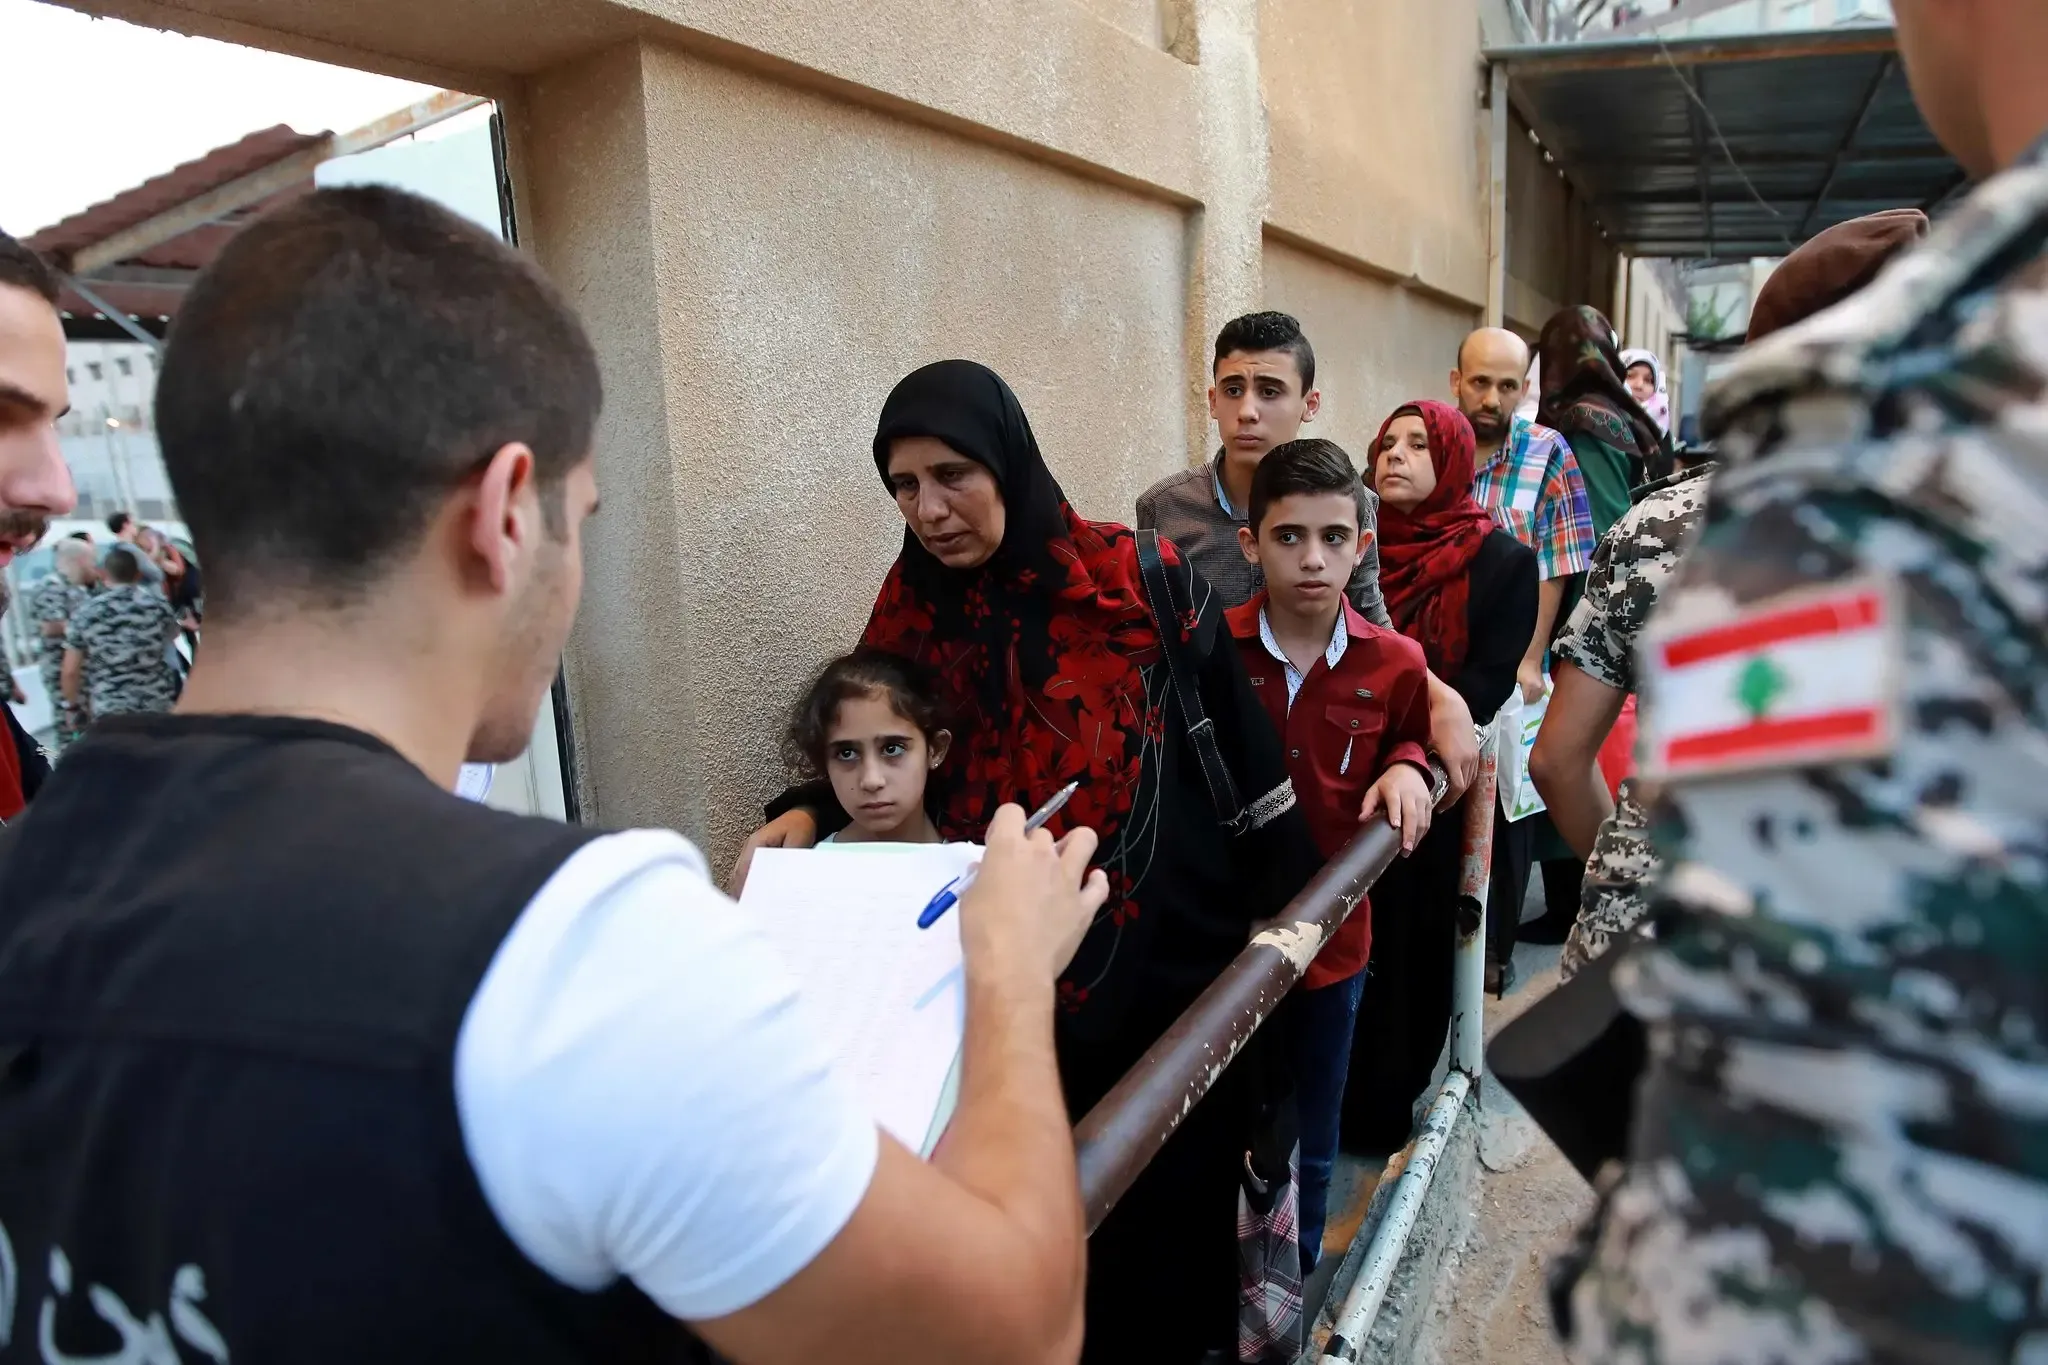 حقوقيون لبنانيون ينتقدون مقترحاً لقانون يُلزم مفوضية اللاجئين نقل السوريين أو ترحيلهم قسراً